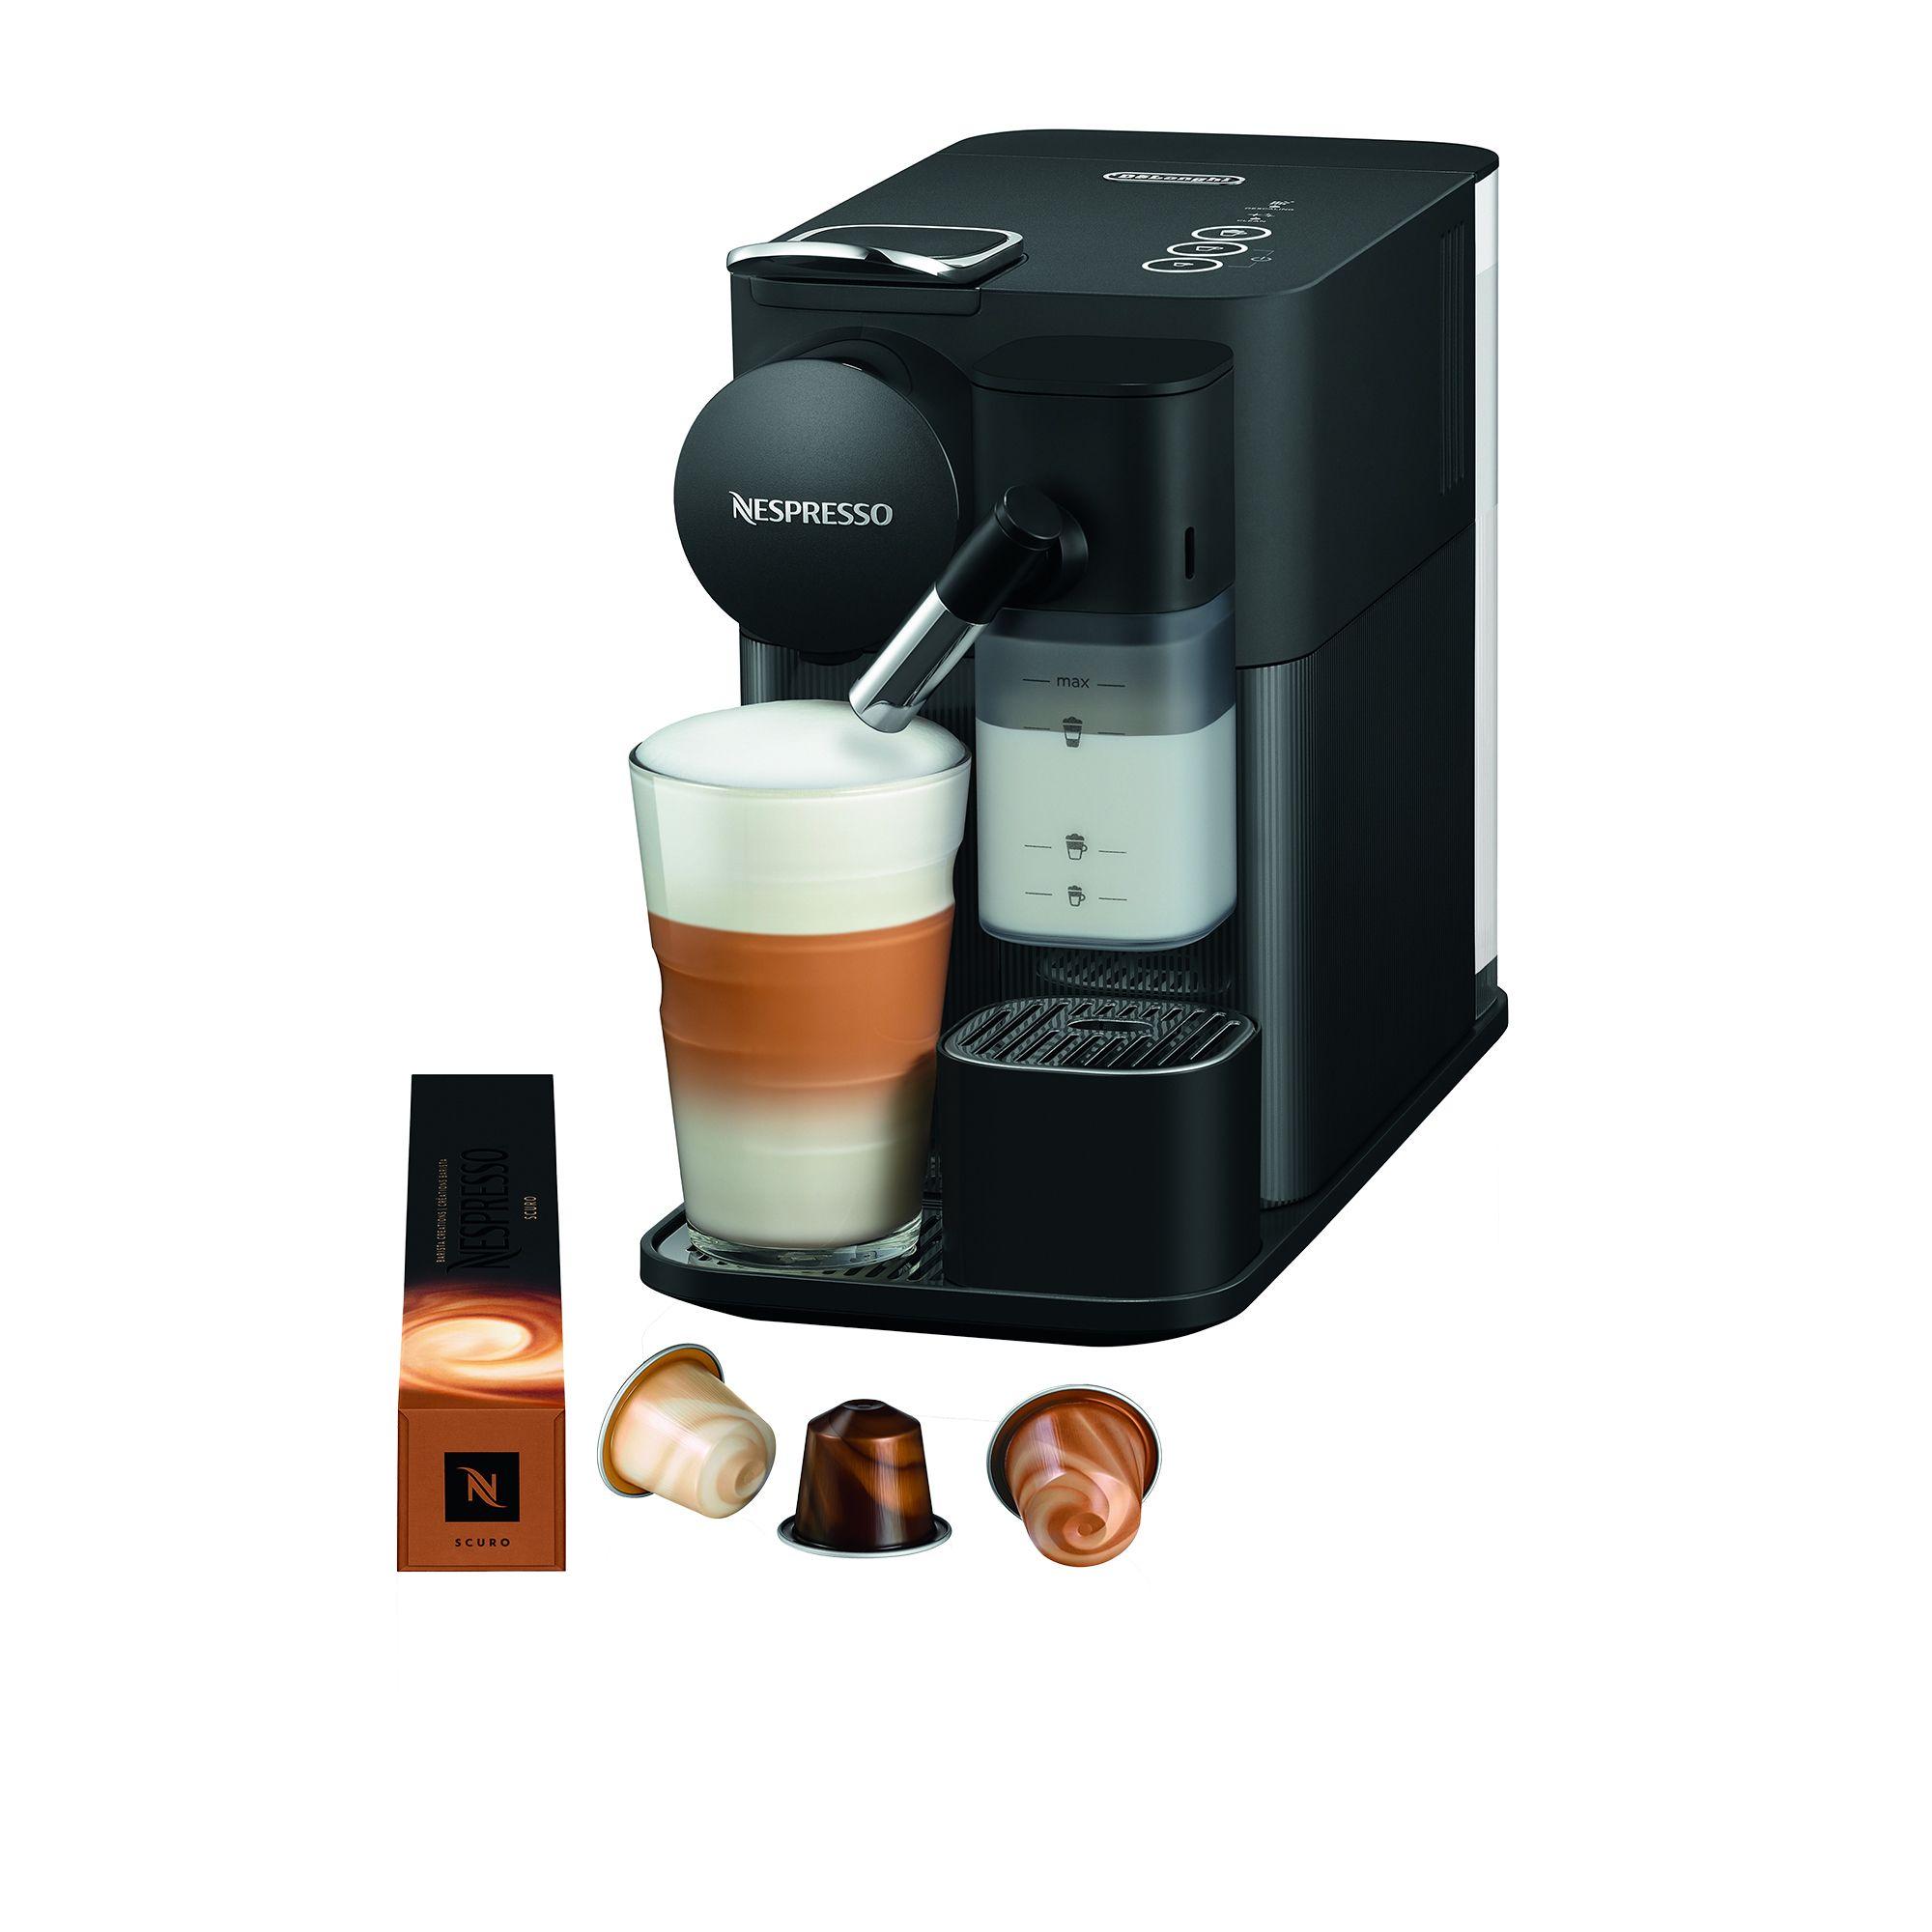 DeLonghi Nespresso Lattissima One EN510B Coffee Machine Black Image 1